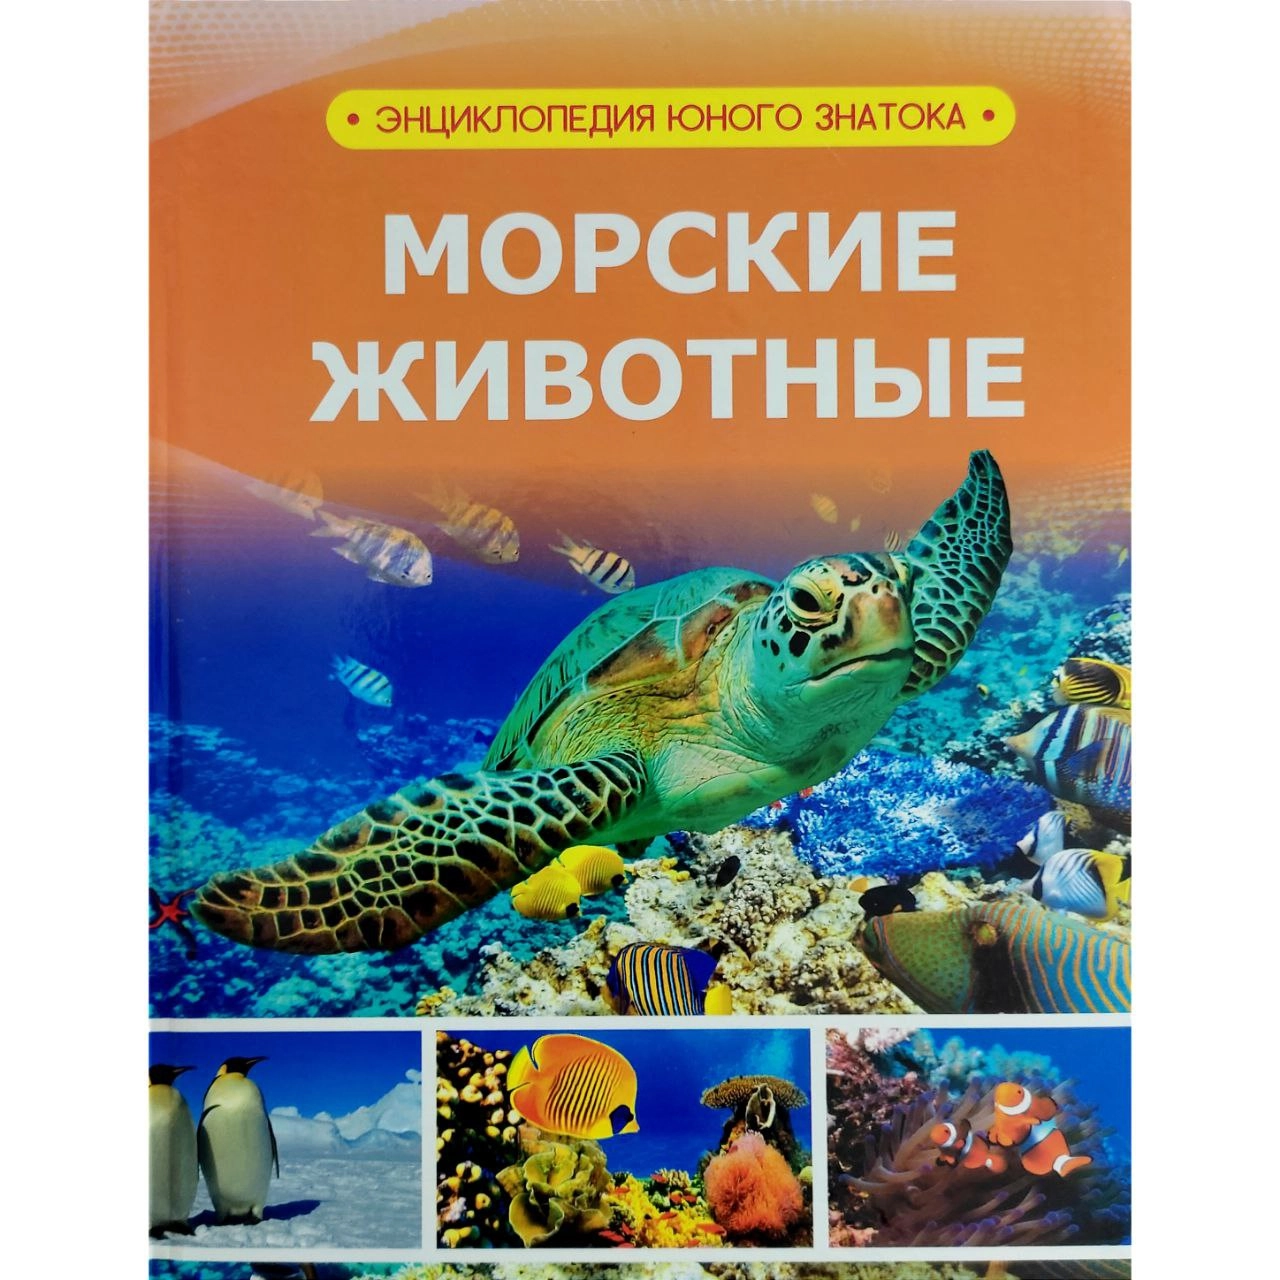 Морские животные (Энциклопедия юного знатока) купить